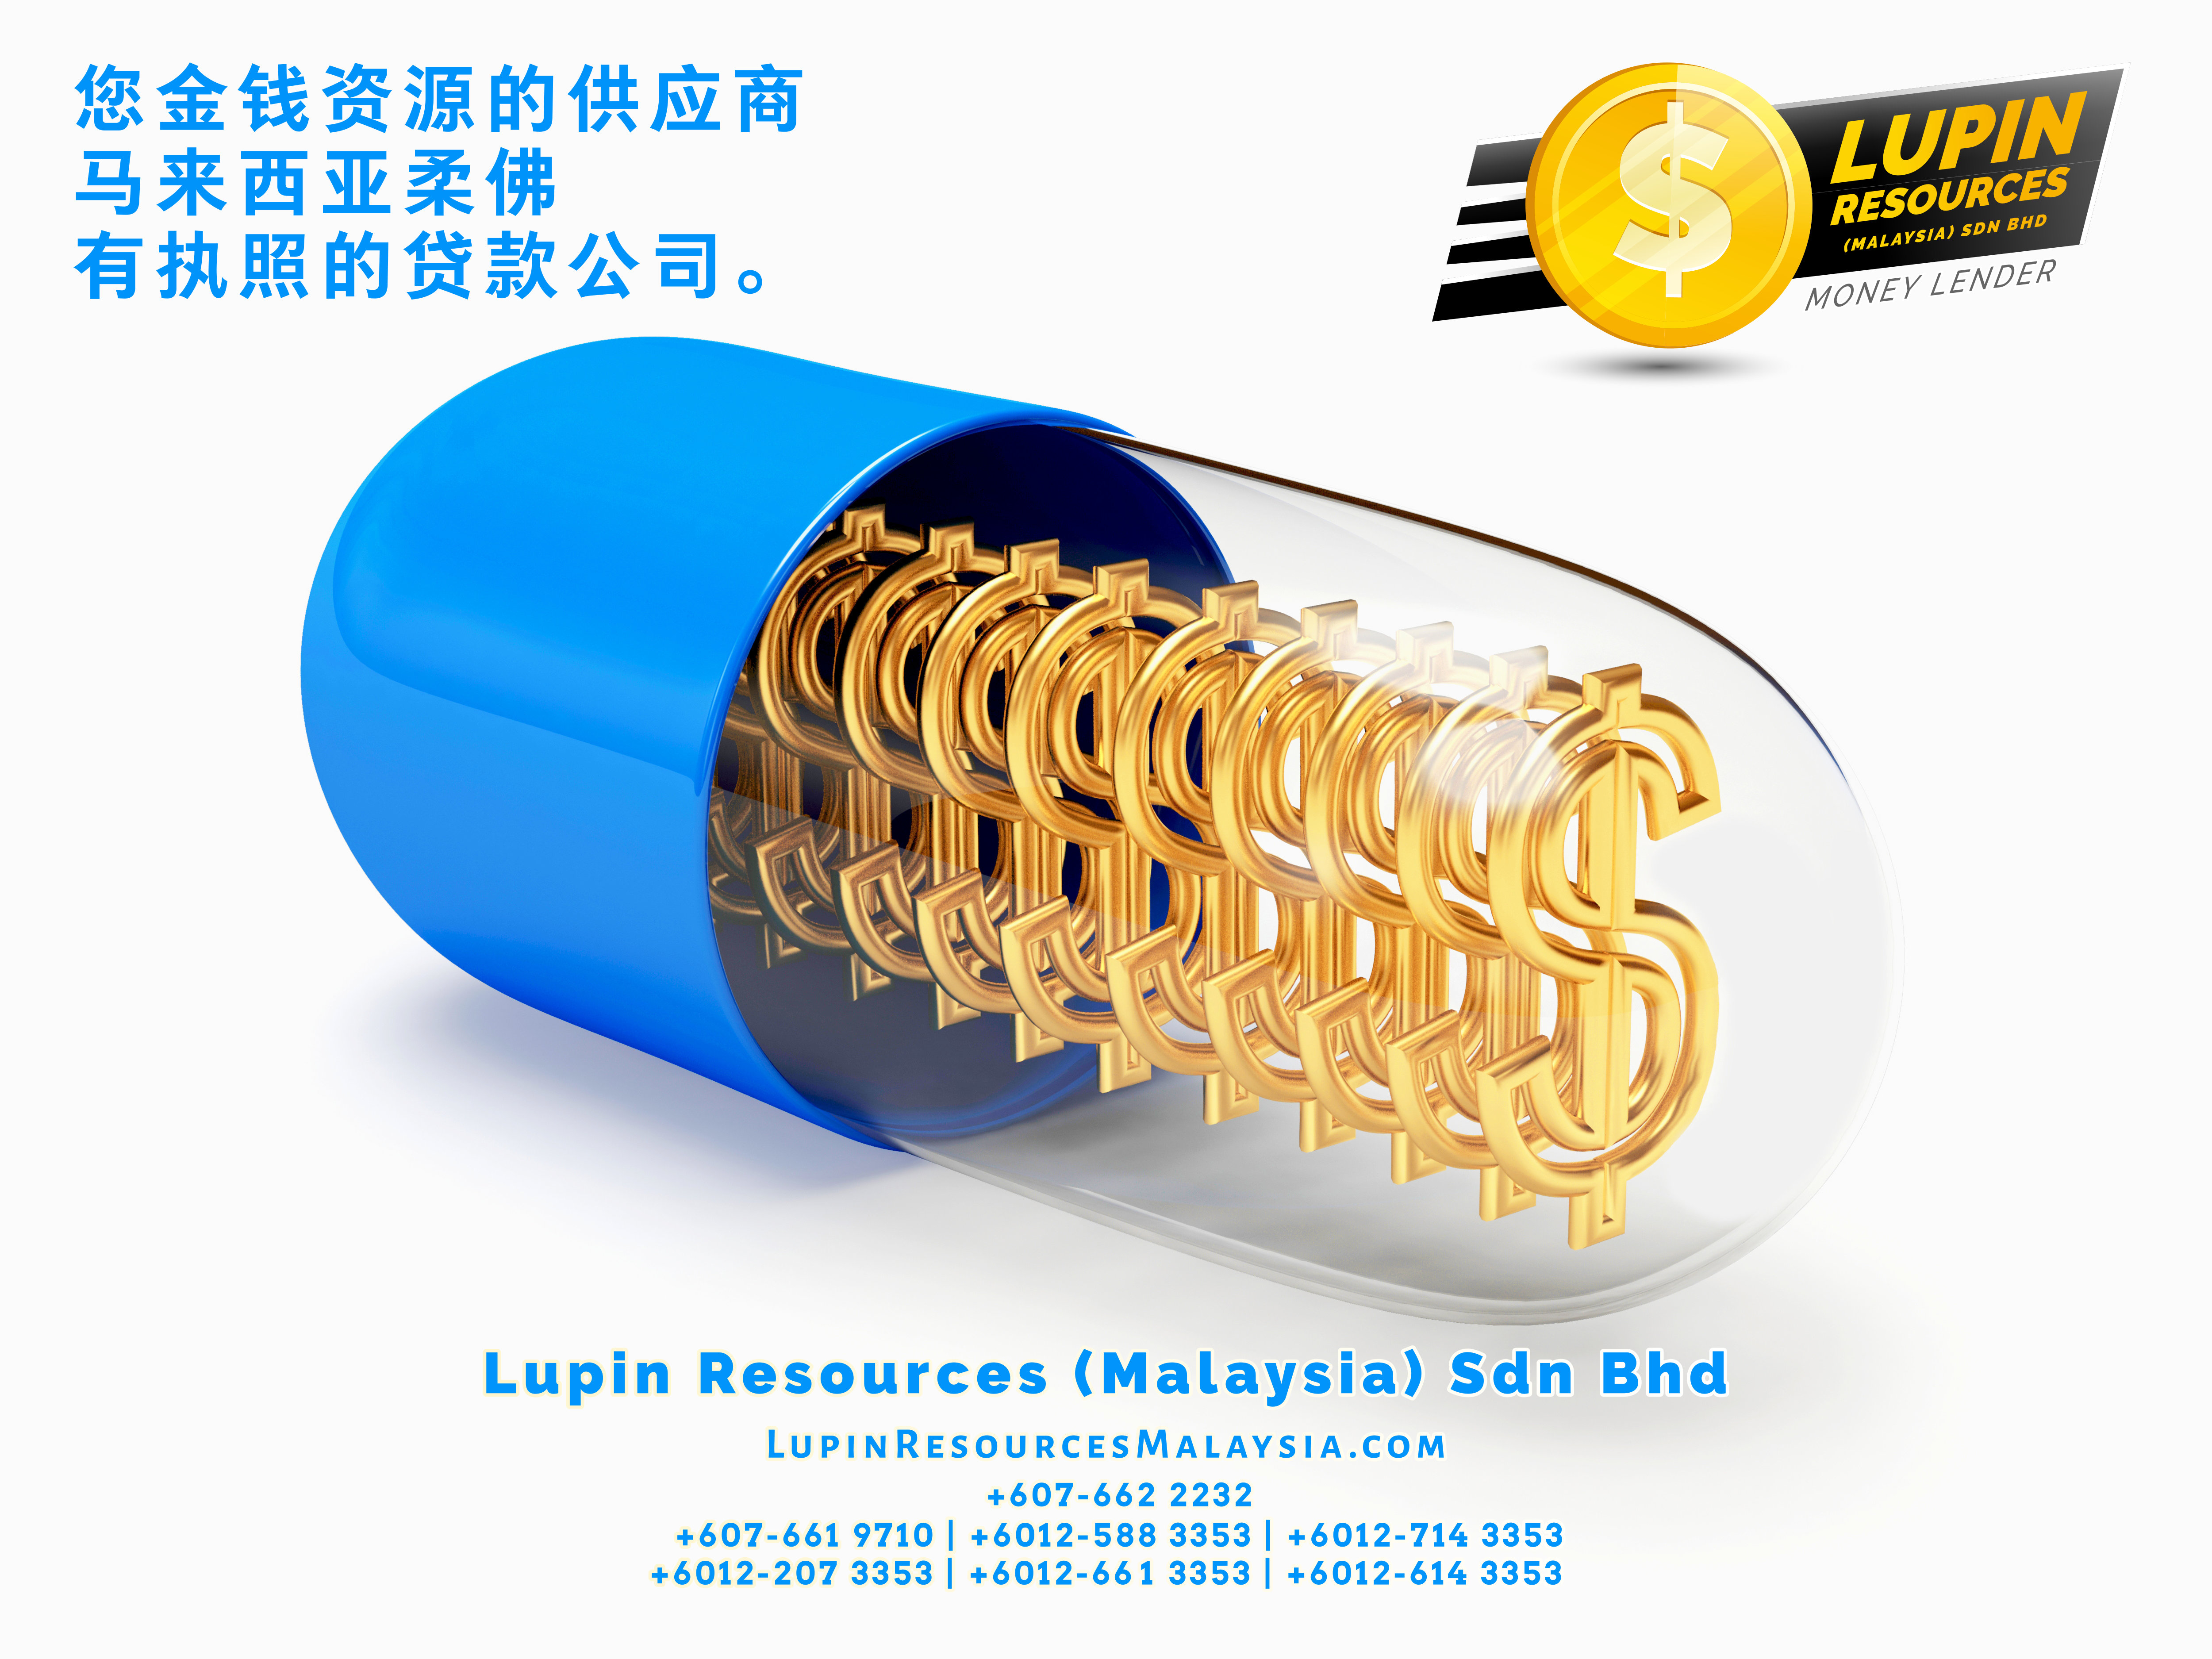 柔佛有执照的贷款公司 Lupin Resources Malaysia SDN BHD 您金钱资源的供应商 古来 柔佛 马来西亚 个人贷款 商业贷款 低利息抵押代款 经济 A01-37